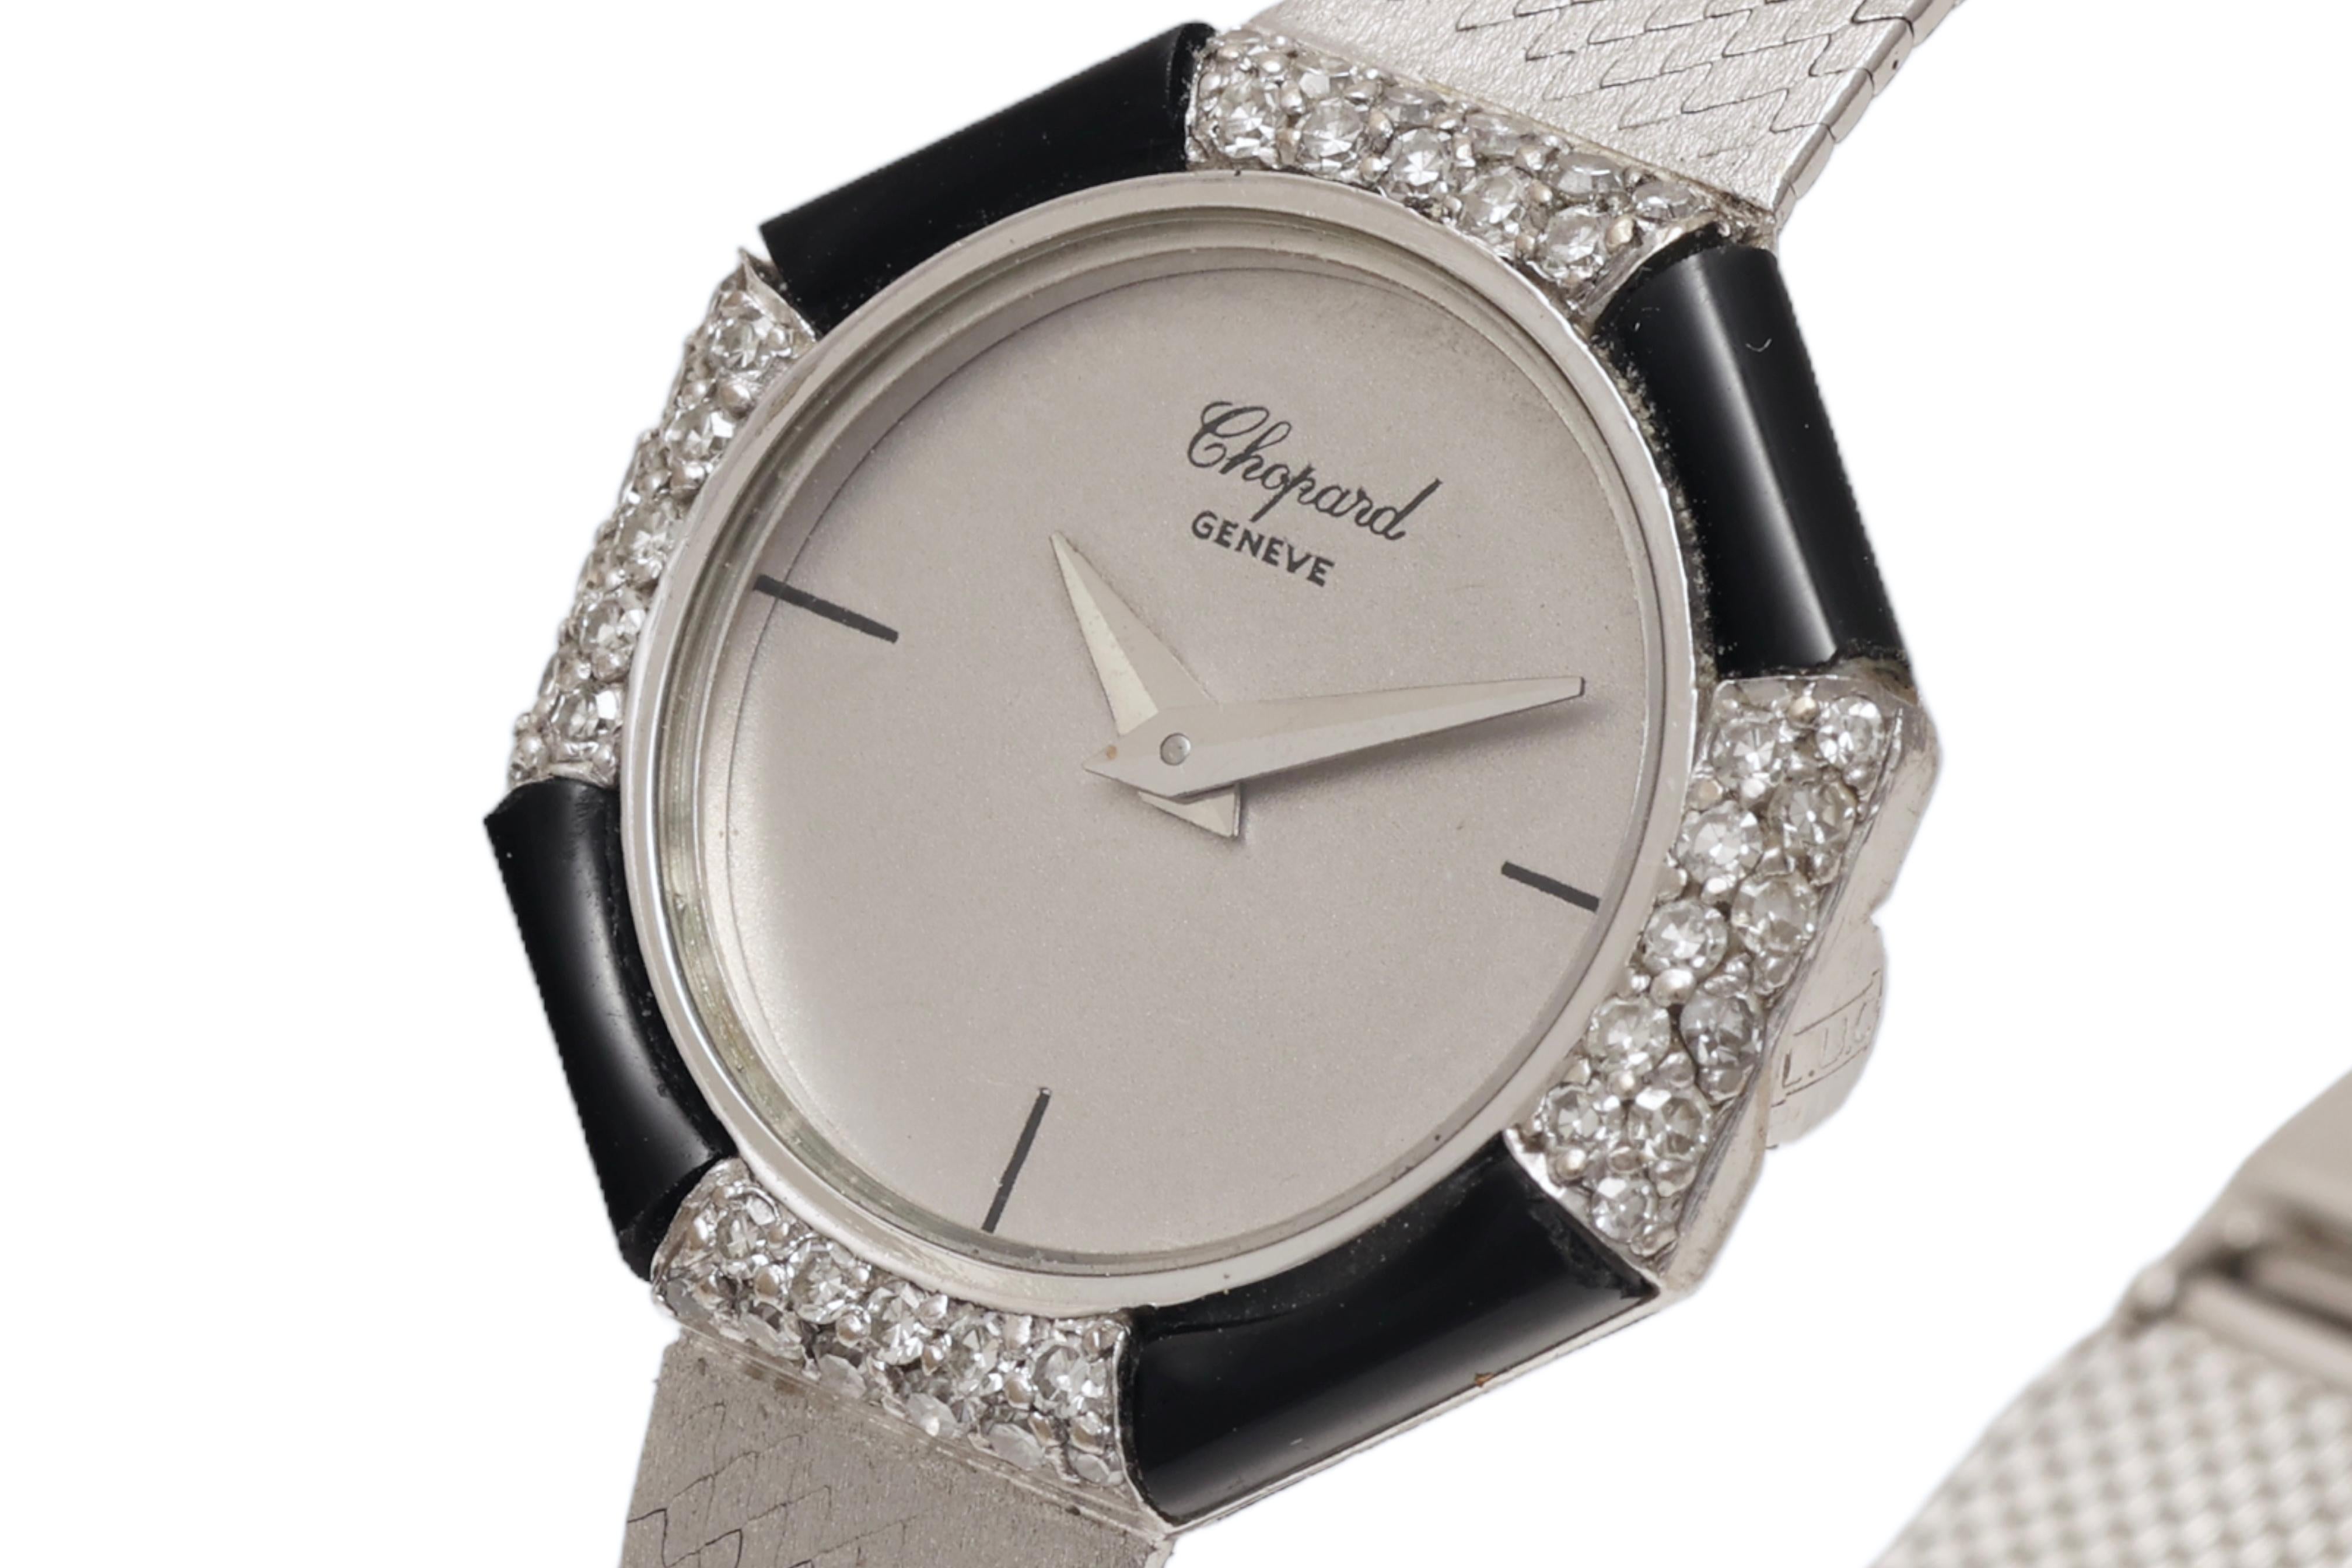 18 Kt White Gold Chopard Onyx & Diamonds Lady Wrist Dress Watch For Sale 1